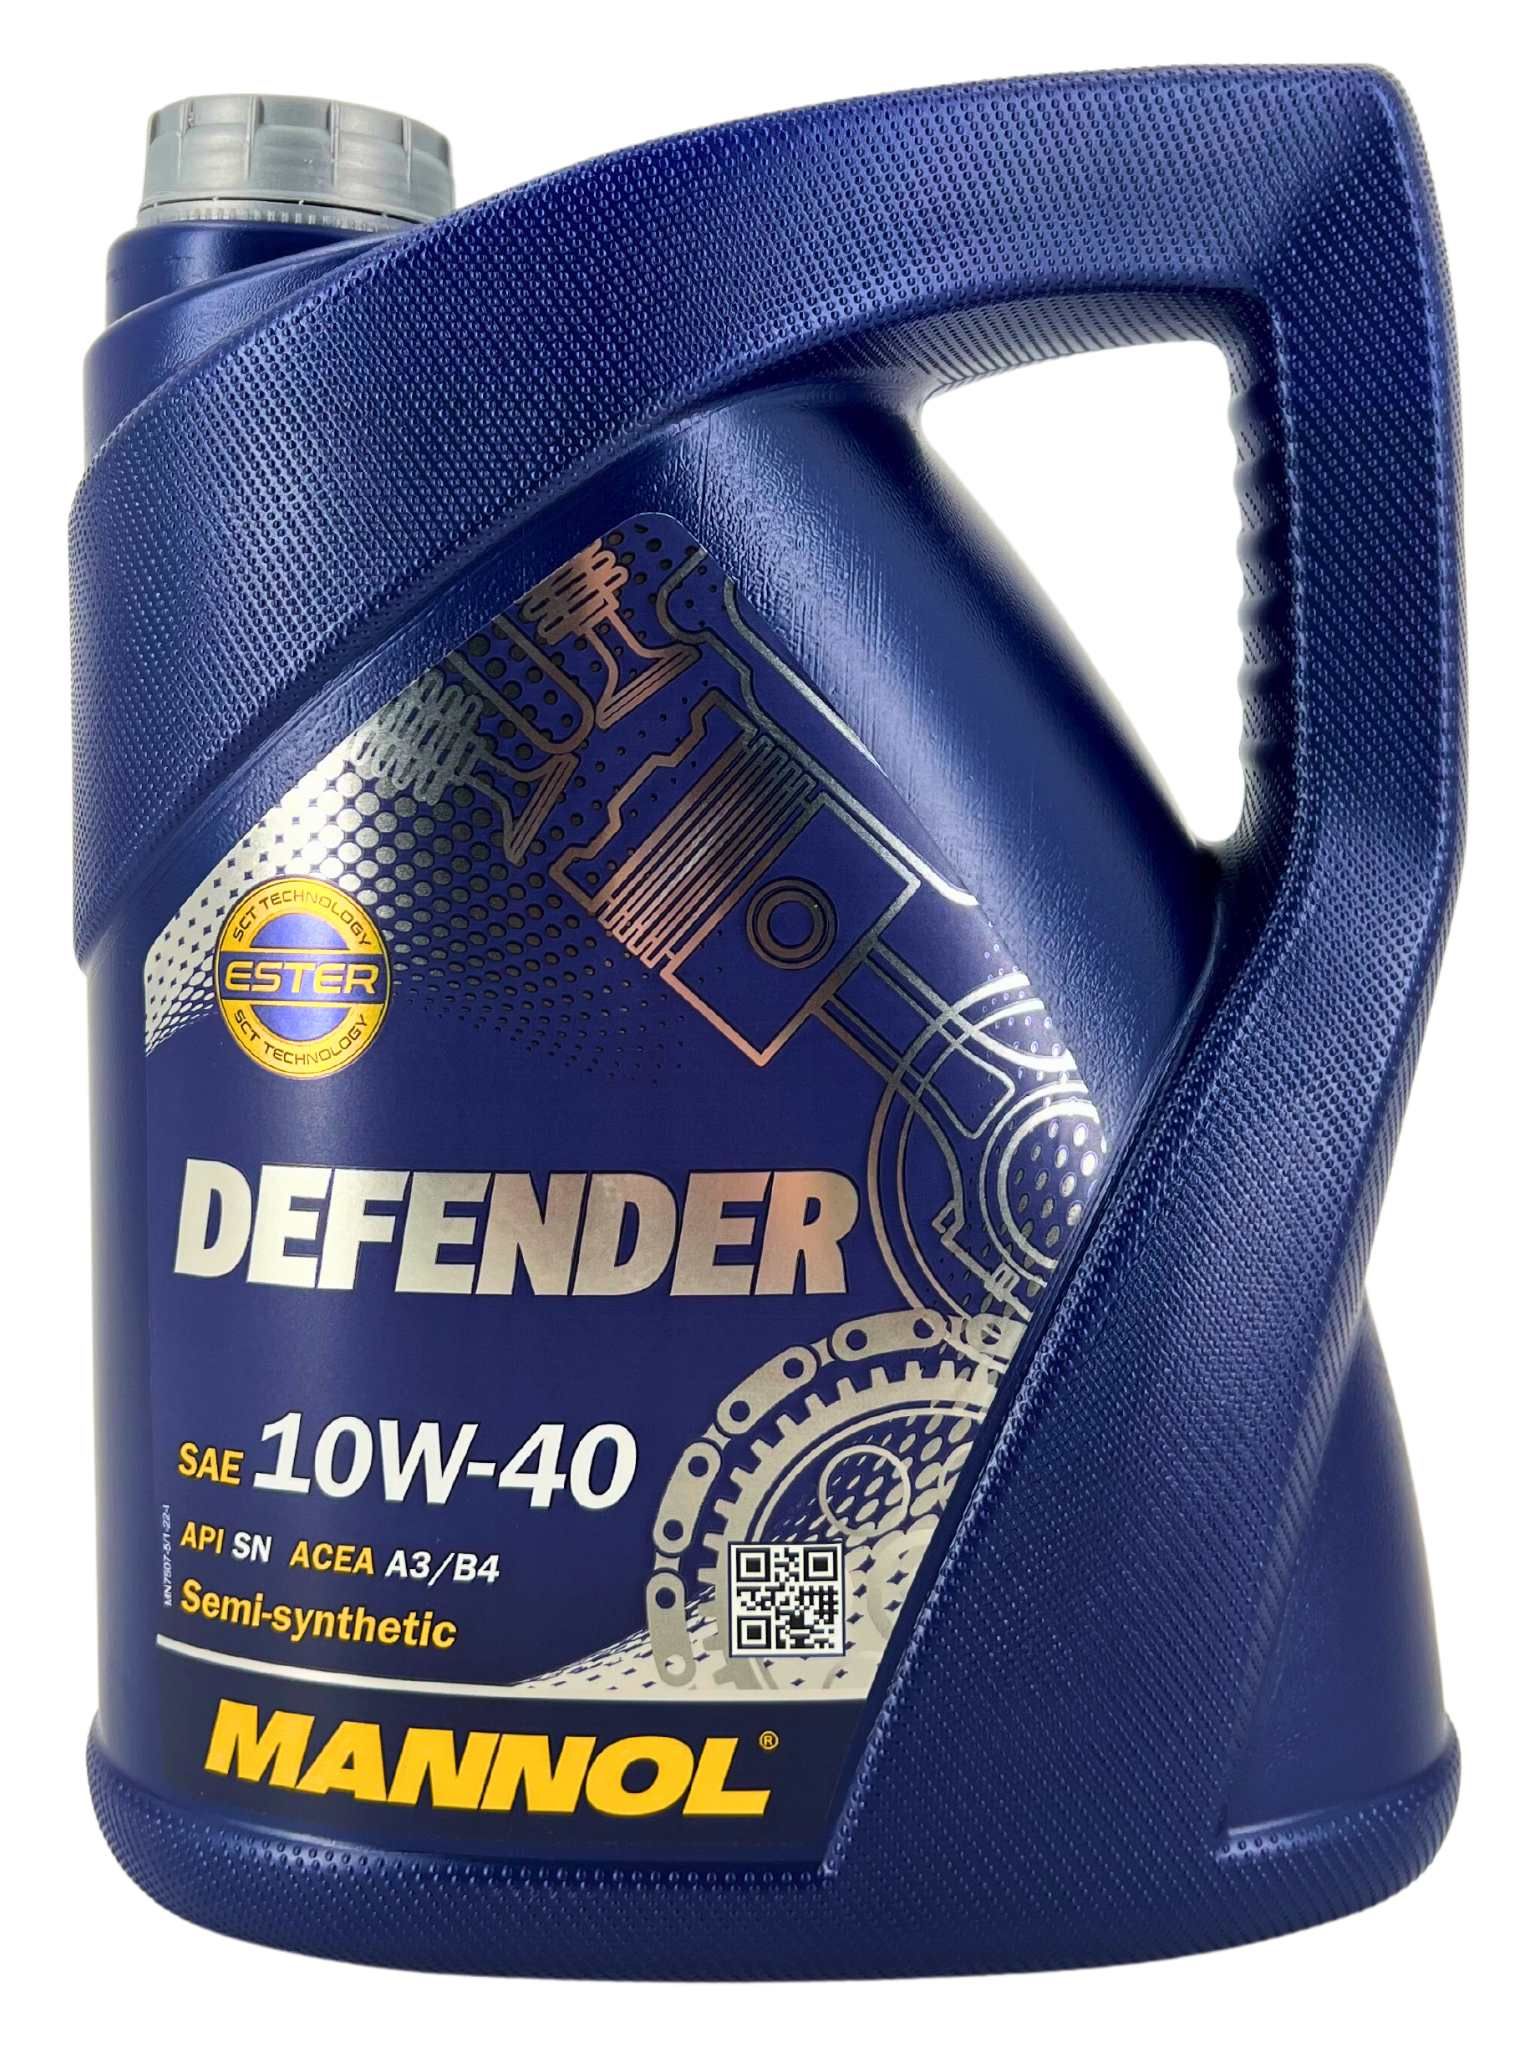 Mannol Defender 10W-40 5 Liter